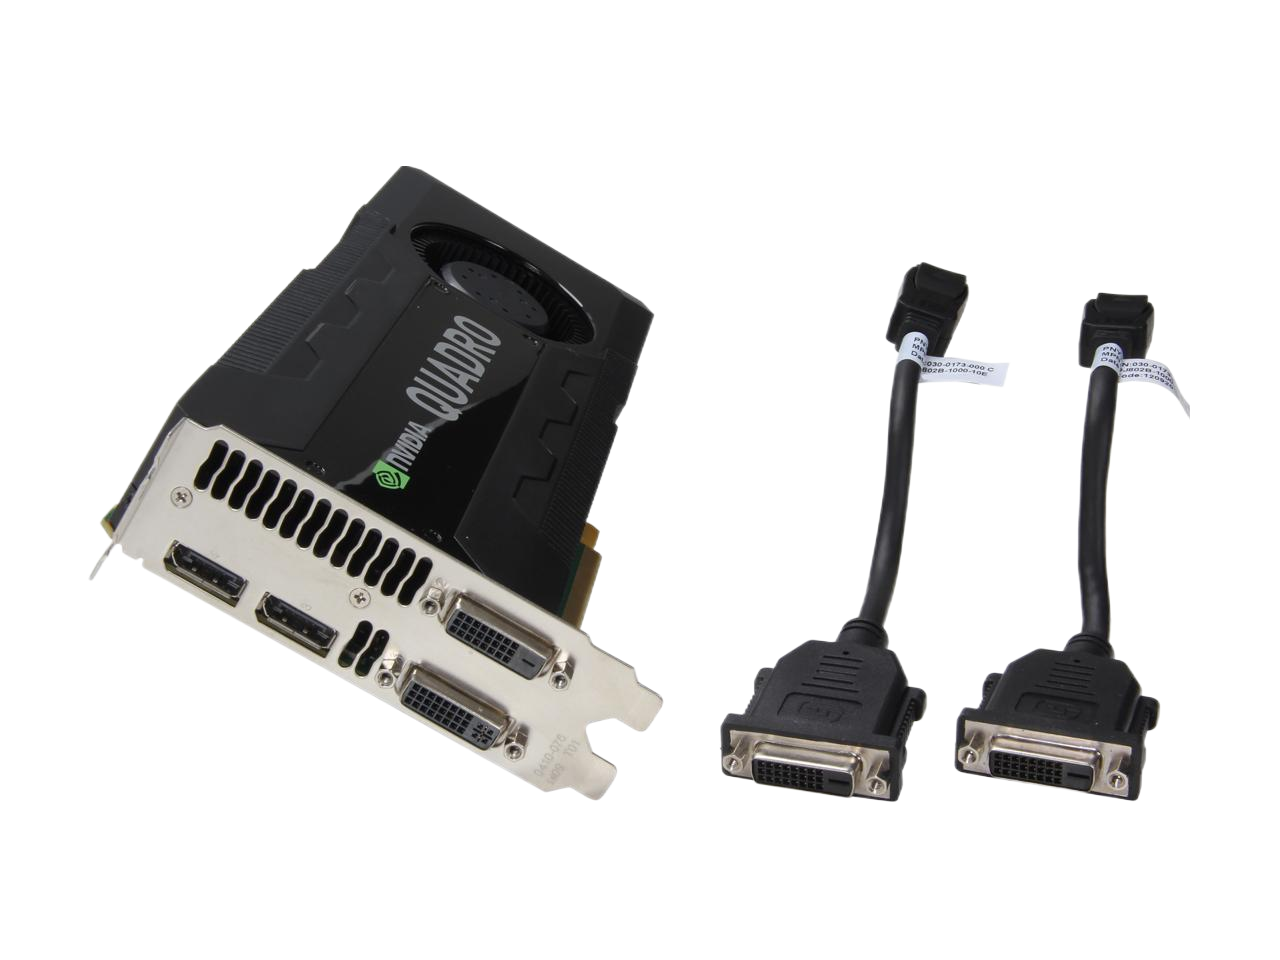 NVIDIA Quadro K5000 4GB GDDR5 256-bit PCI Express 2.0 x16 Full Height Video Card with Rear Bracket